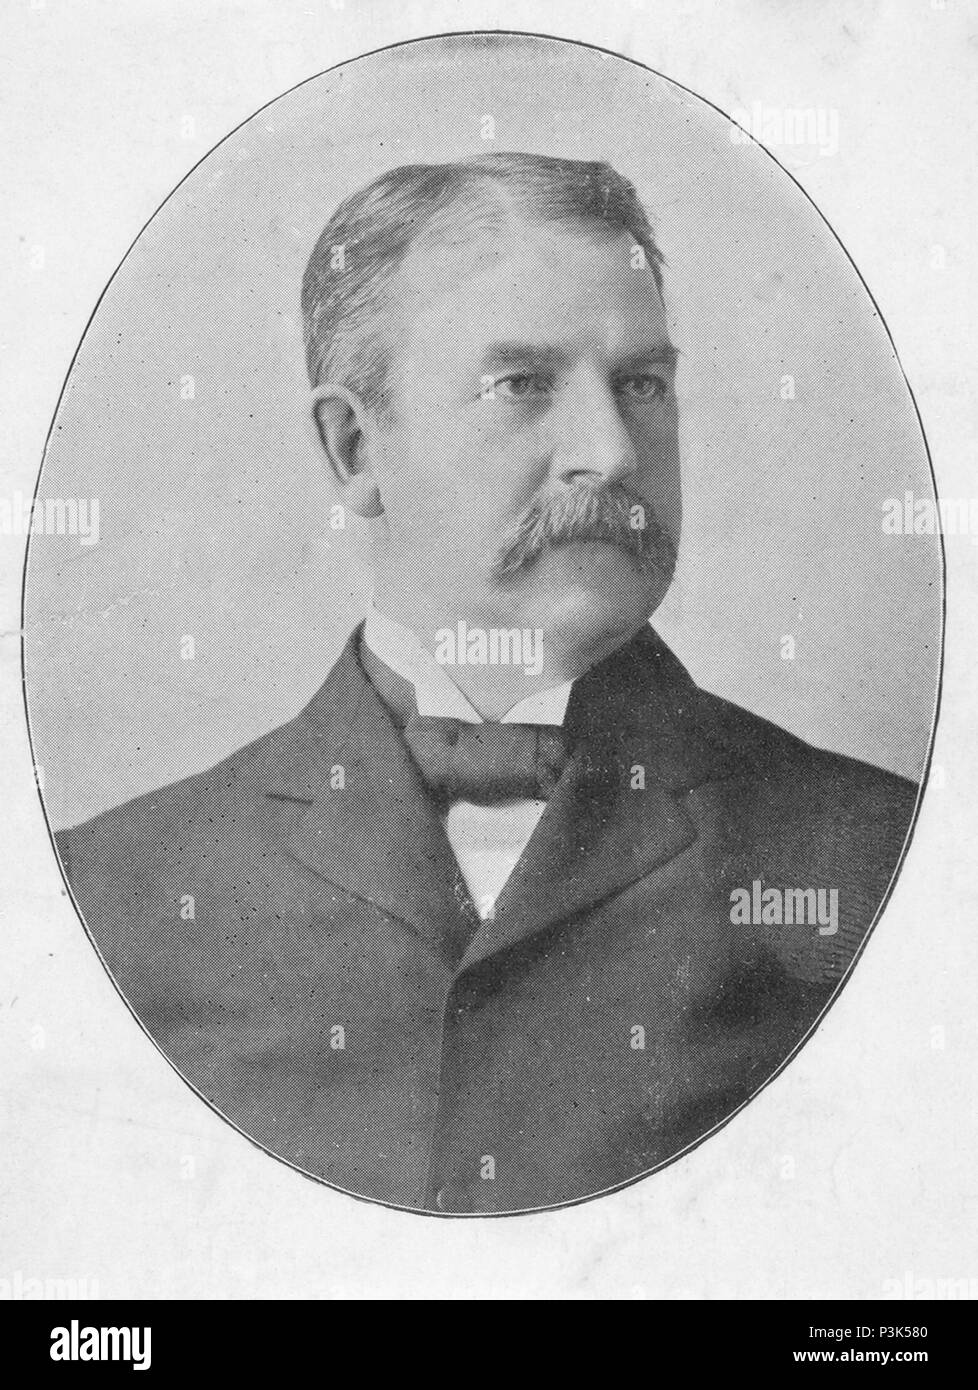 Albert Goodwill Spalding (1849-1915) amerikanischer Krug, Manager und Executive in den frühen Jahren von professionellen Baseball, und der Mitbegründer von A.G. Spalding Sportartikelunternehmen Stockfoto